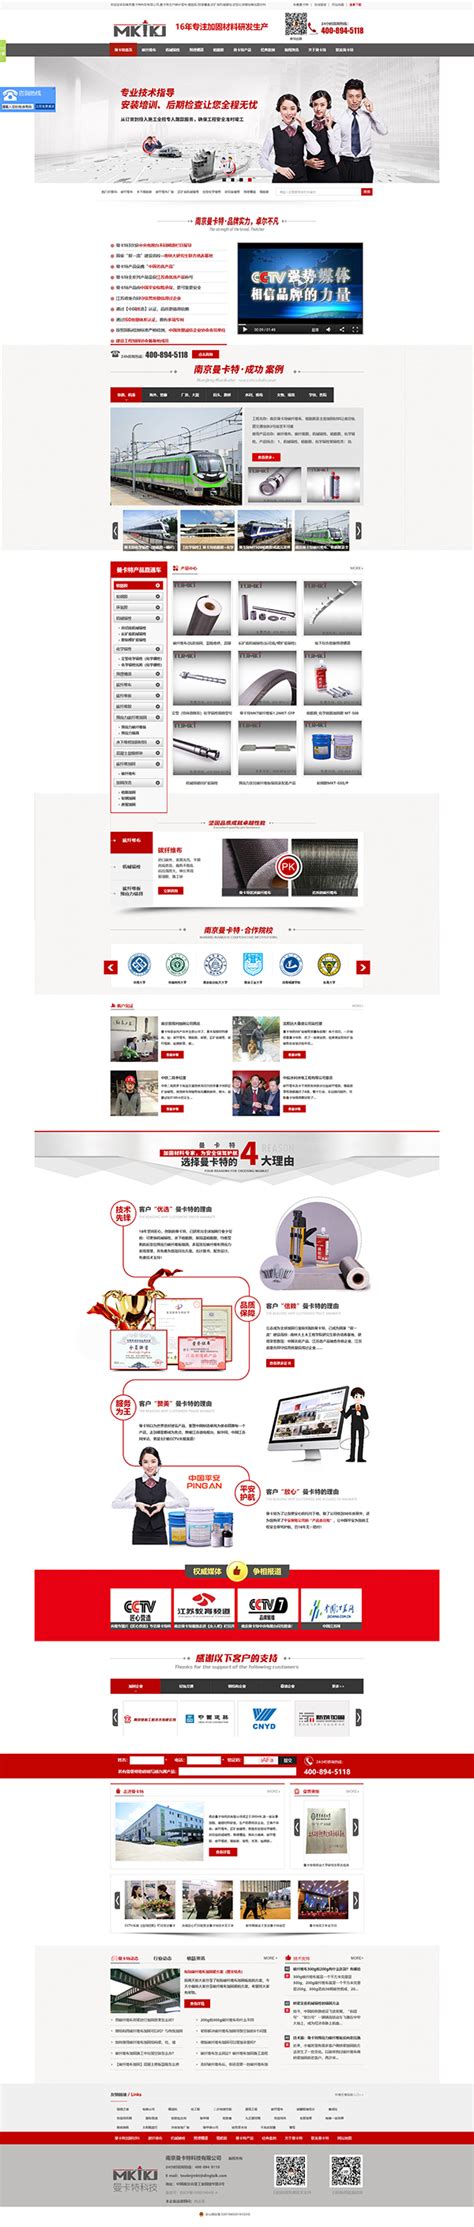 南京曼卡特科技营销型网站案例展示|制造业